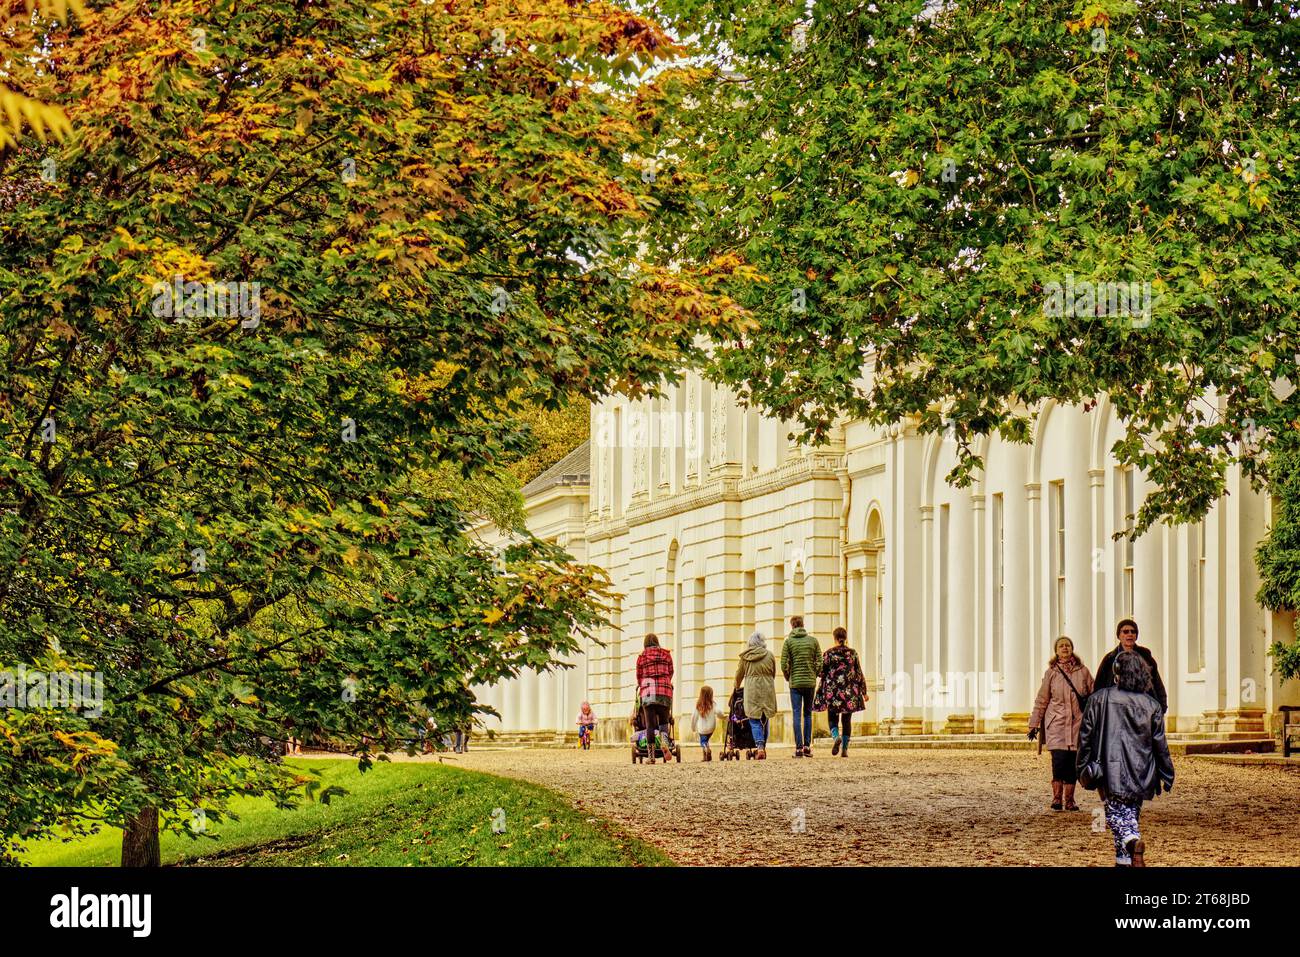 Hampstead, Londra, Inghilterra, Regno Unito - persone che visitano Kenwood House, una casa signorile ai margini di Hampstead Heath in autunno. Foto Stock